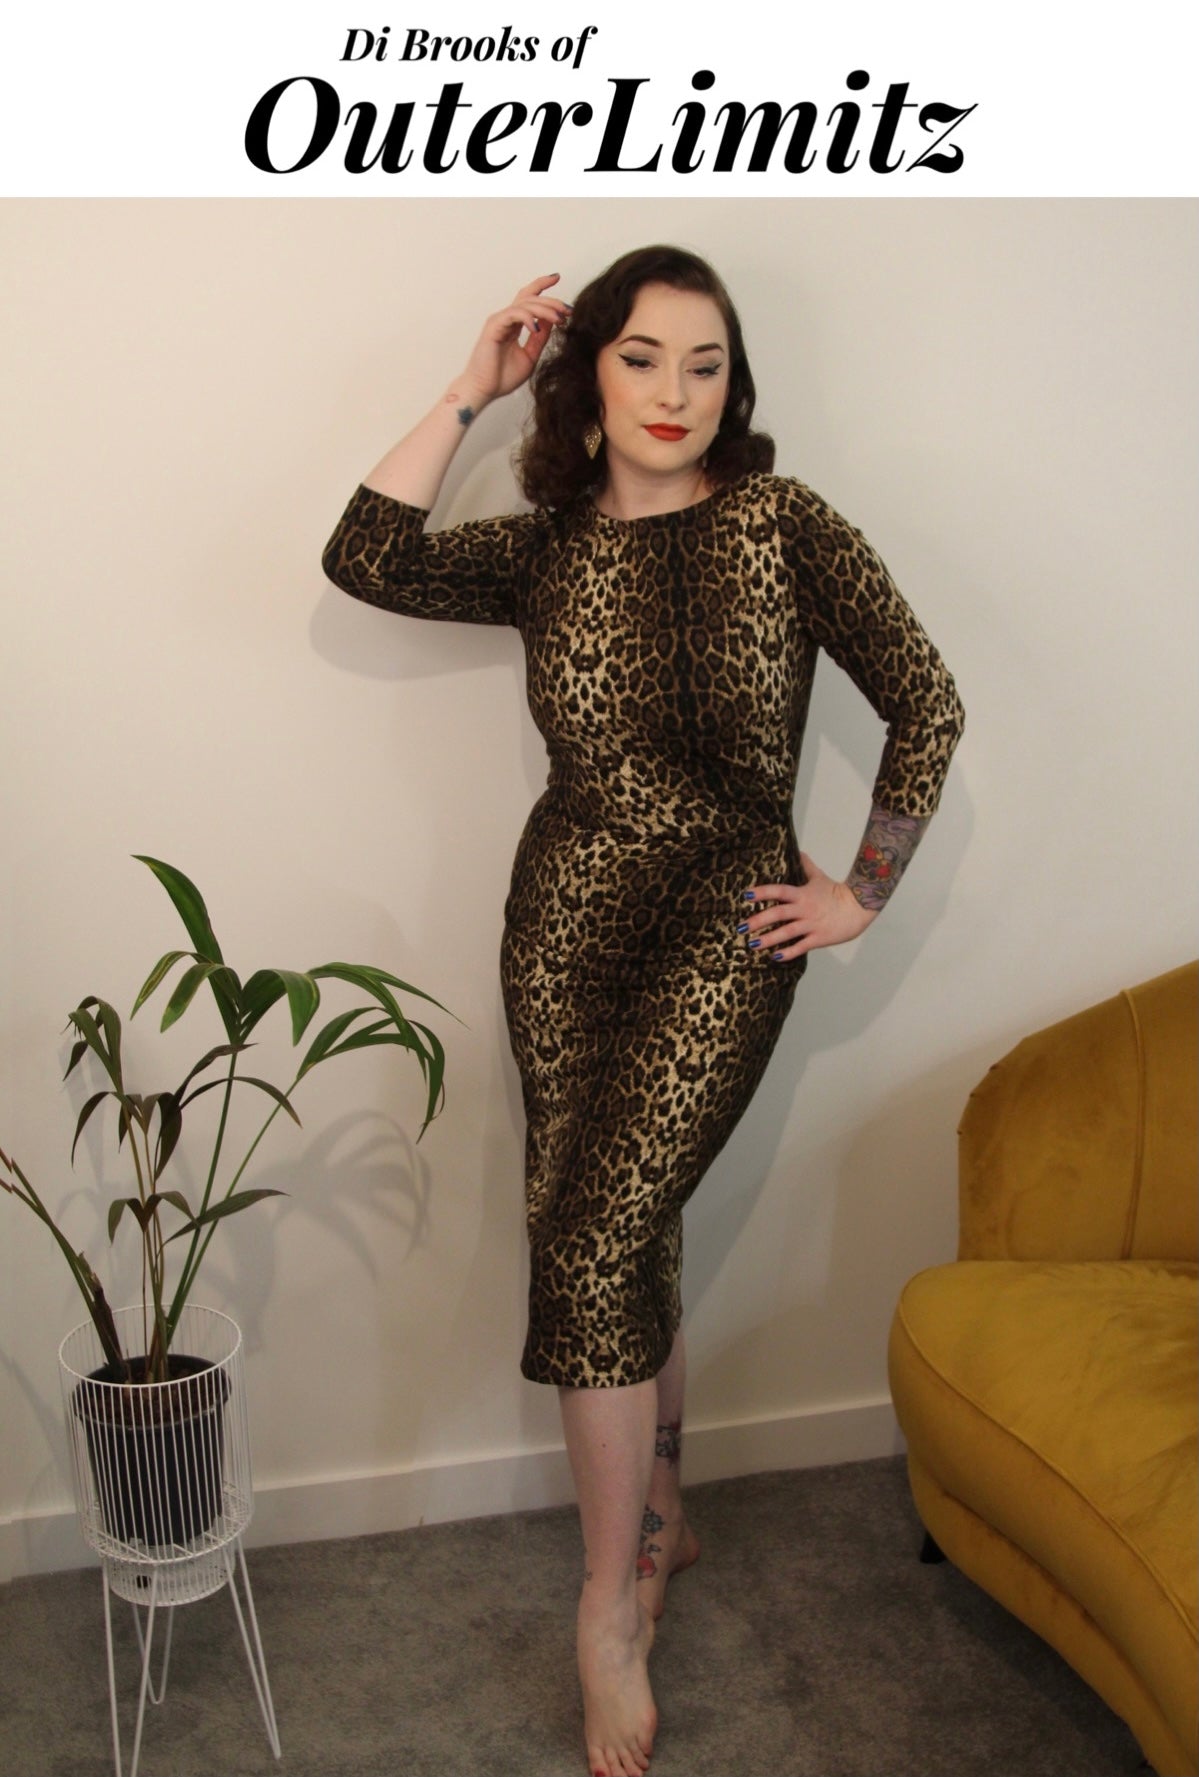 Joan vintage 1950s style wiggle dress in wicked leopard print